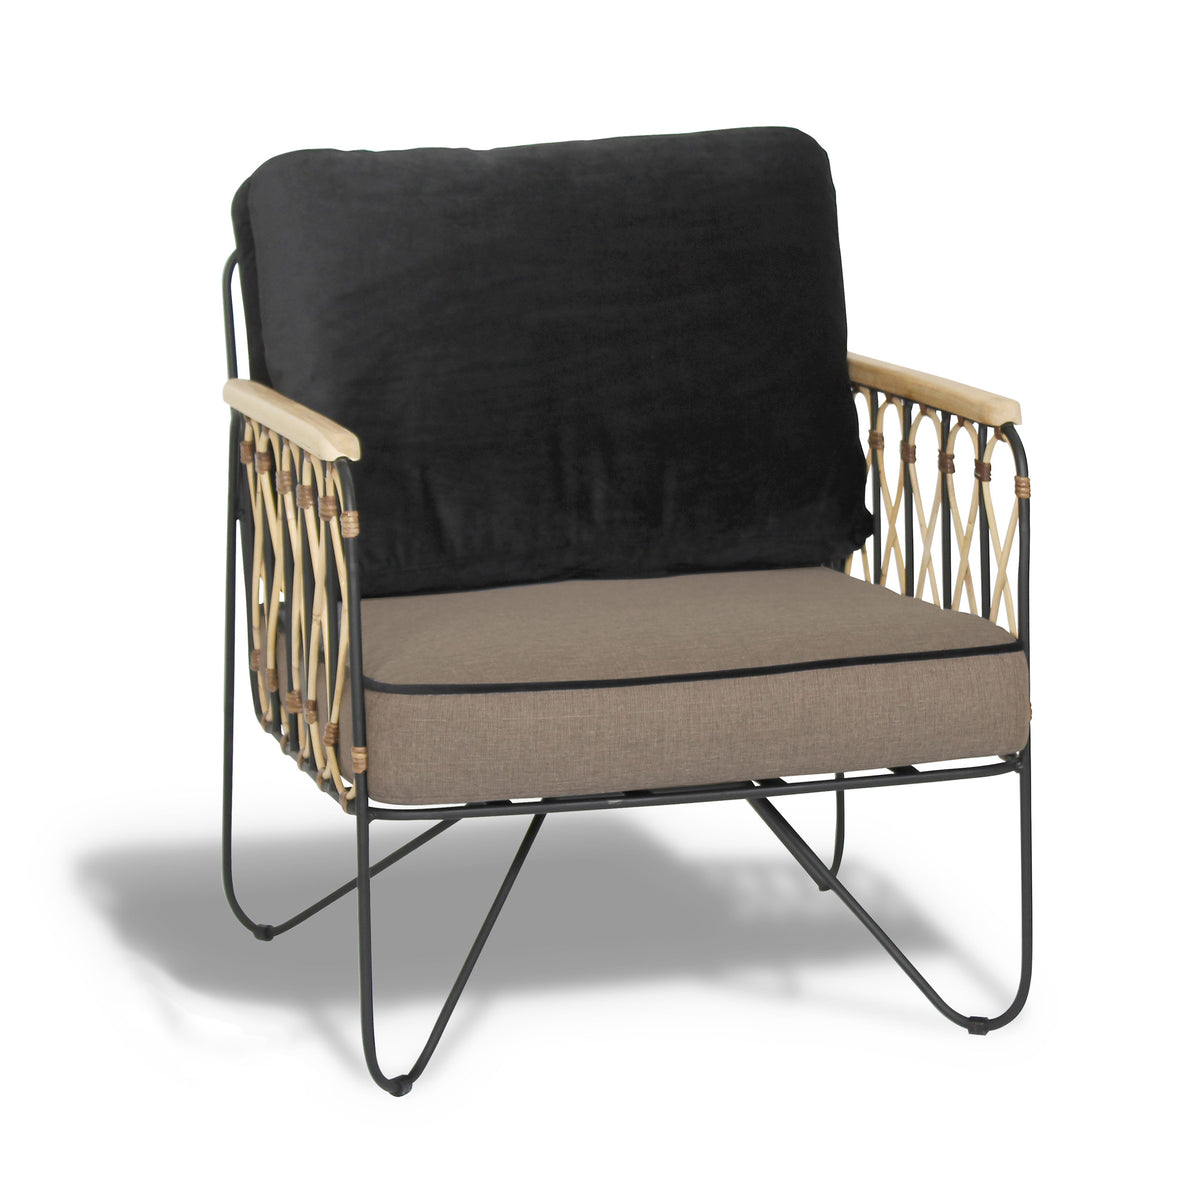 Fauteuil lounge aspect rotin avec structure en métal thermolaqué noir